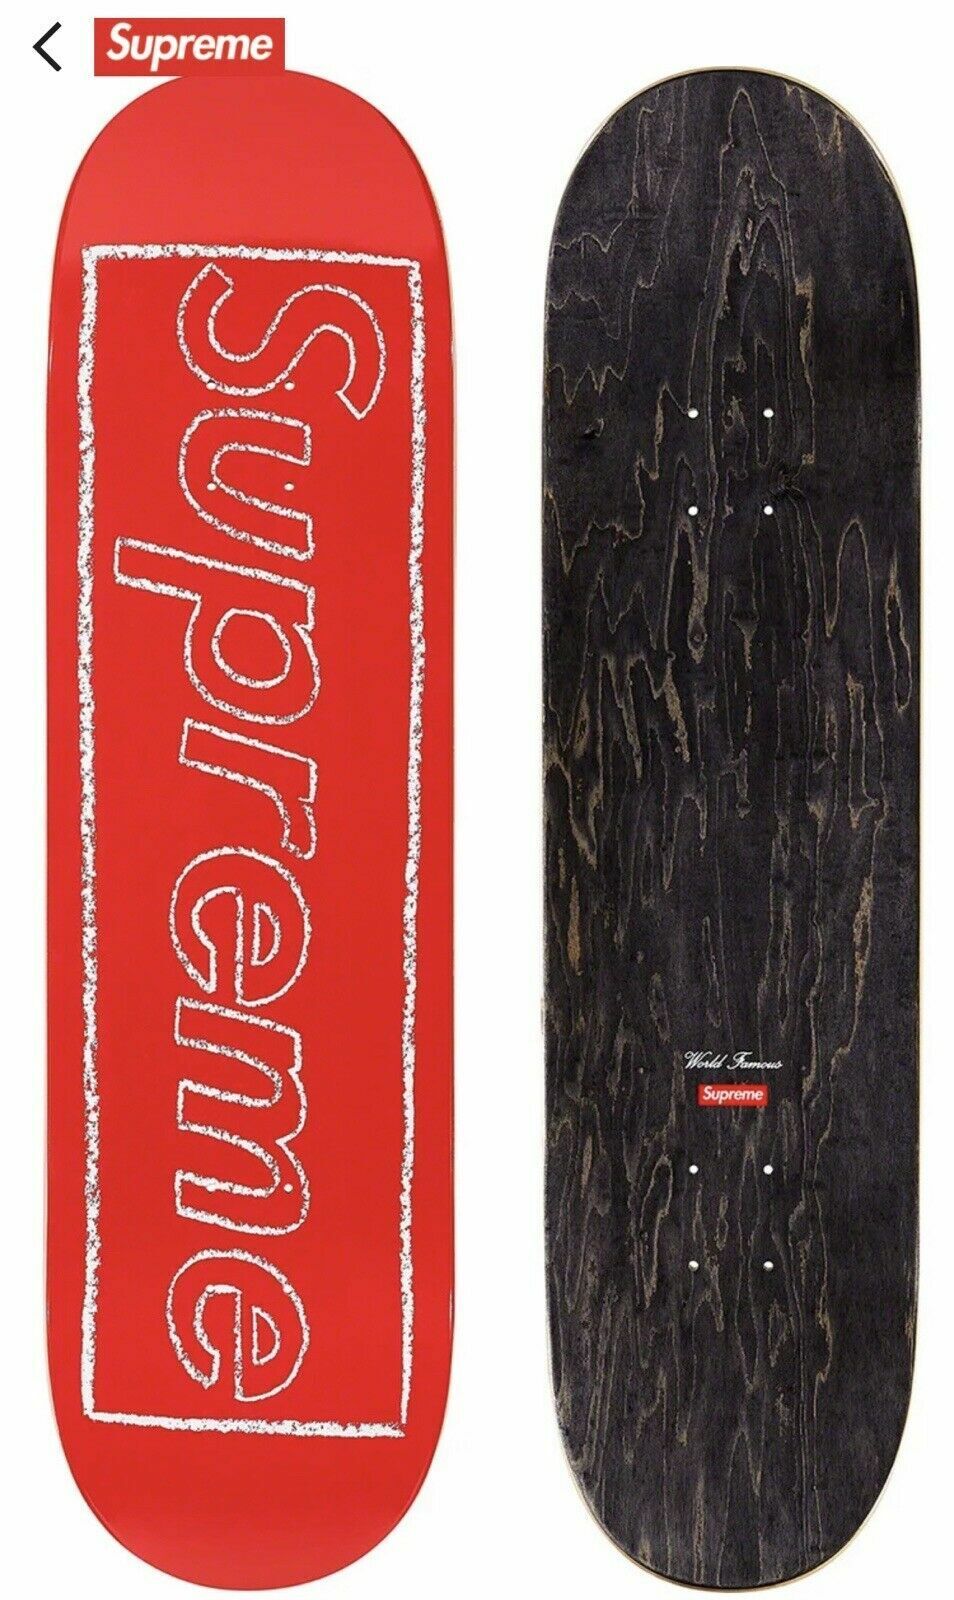 Supreme Kaws Skateboard Deck Red Chalk 2021 8.625 X 32.25 8 5/8